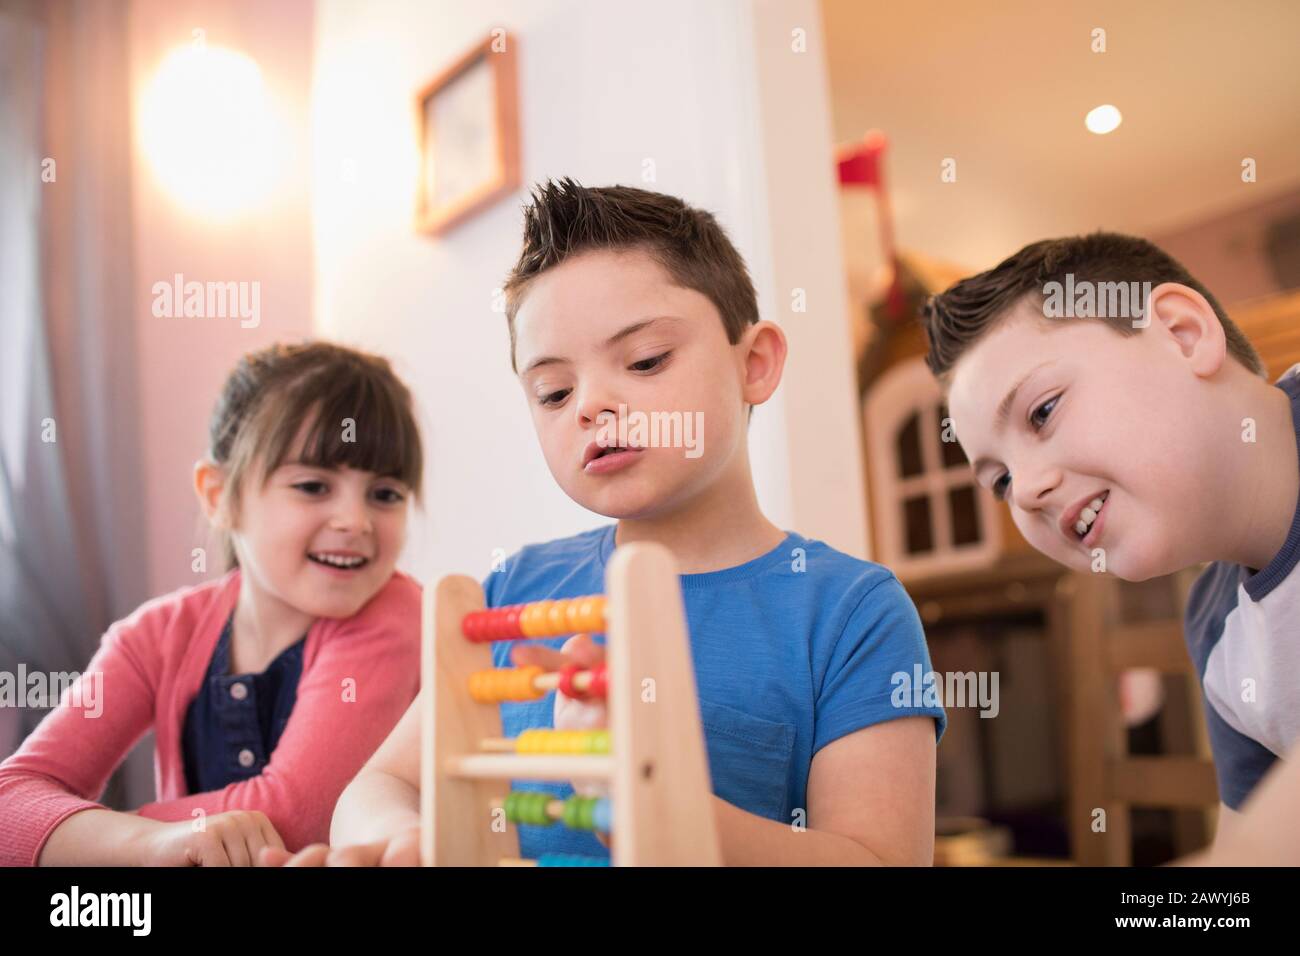 Junge mit Down-Syndrom und Geschwistern, die mit Spielzeug spielen Stockfoto